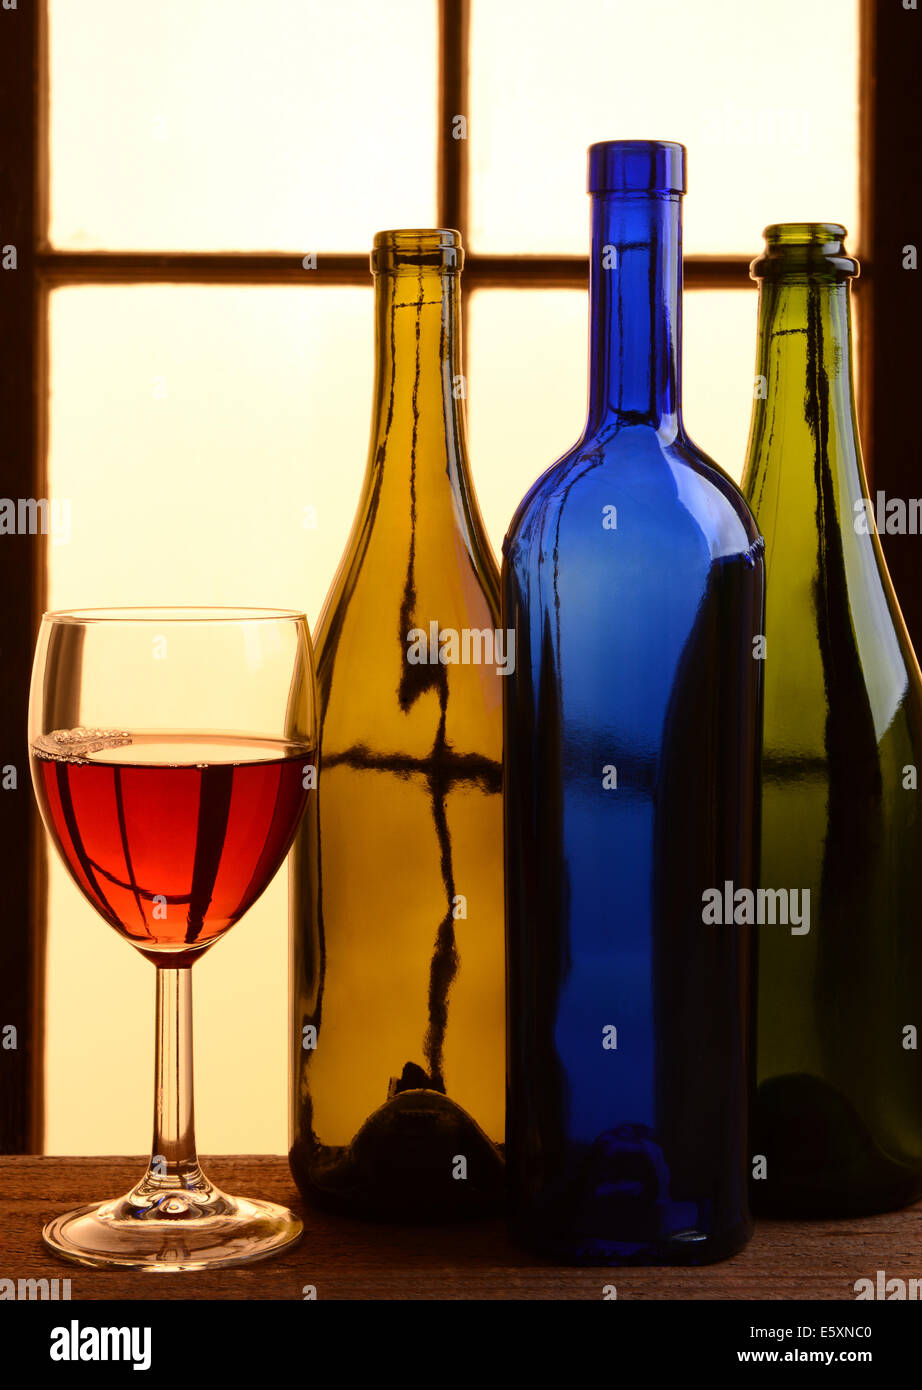 Ein Wein Stillleben mit warmen Tönen. Drei verschiedene Wein-Flaschen und einem Glas Rotwein vor einem Fenster mit warmen Sonnenlicht. Stockfoto